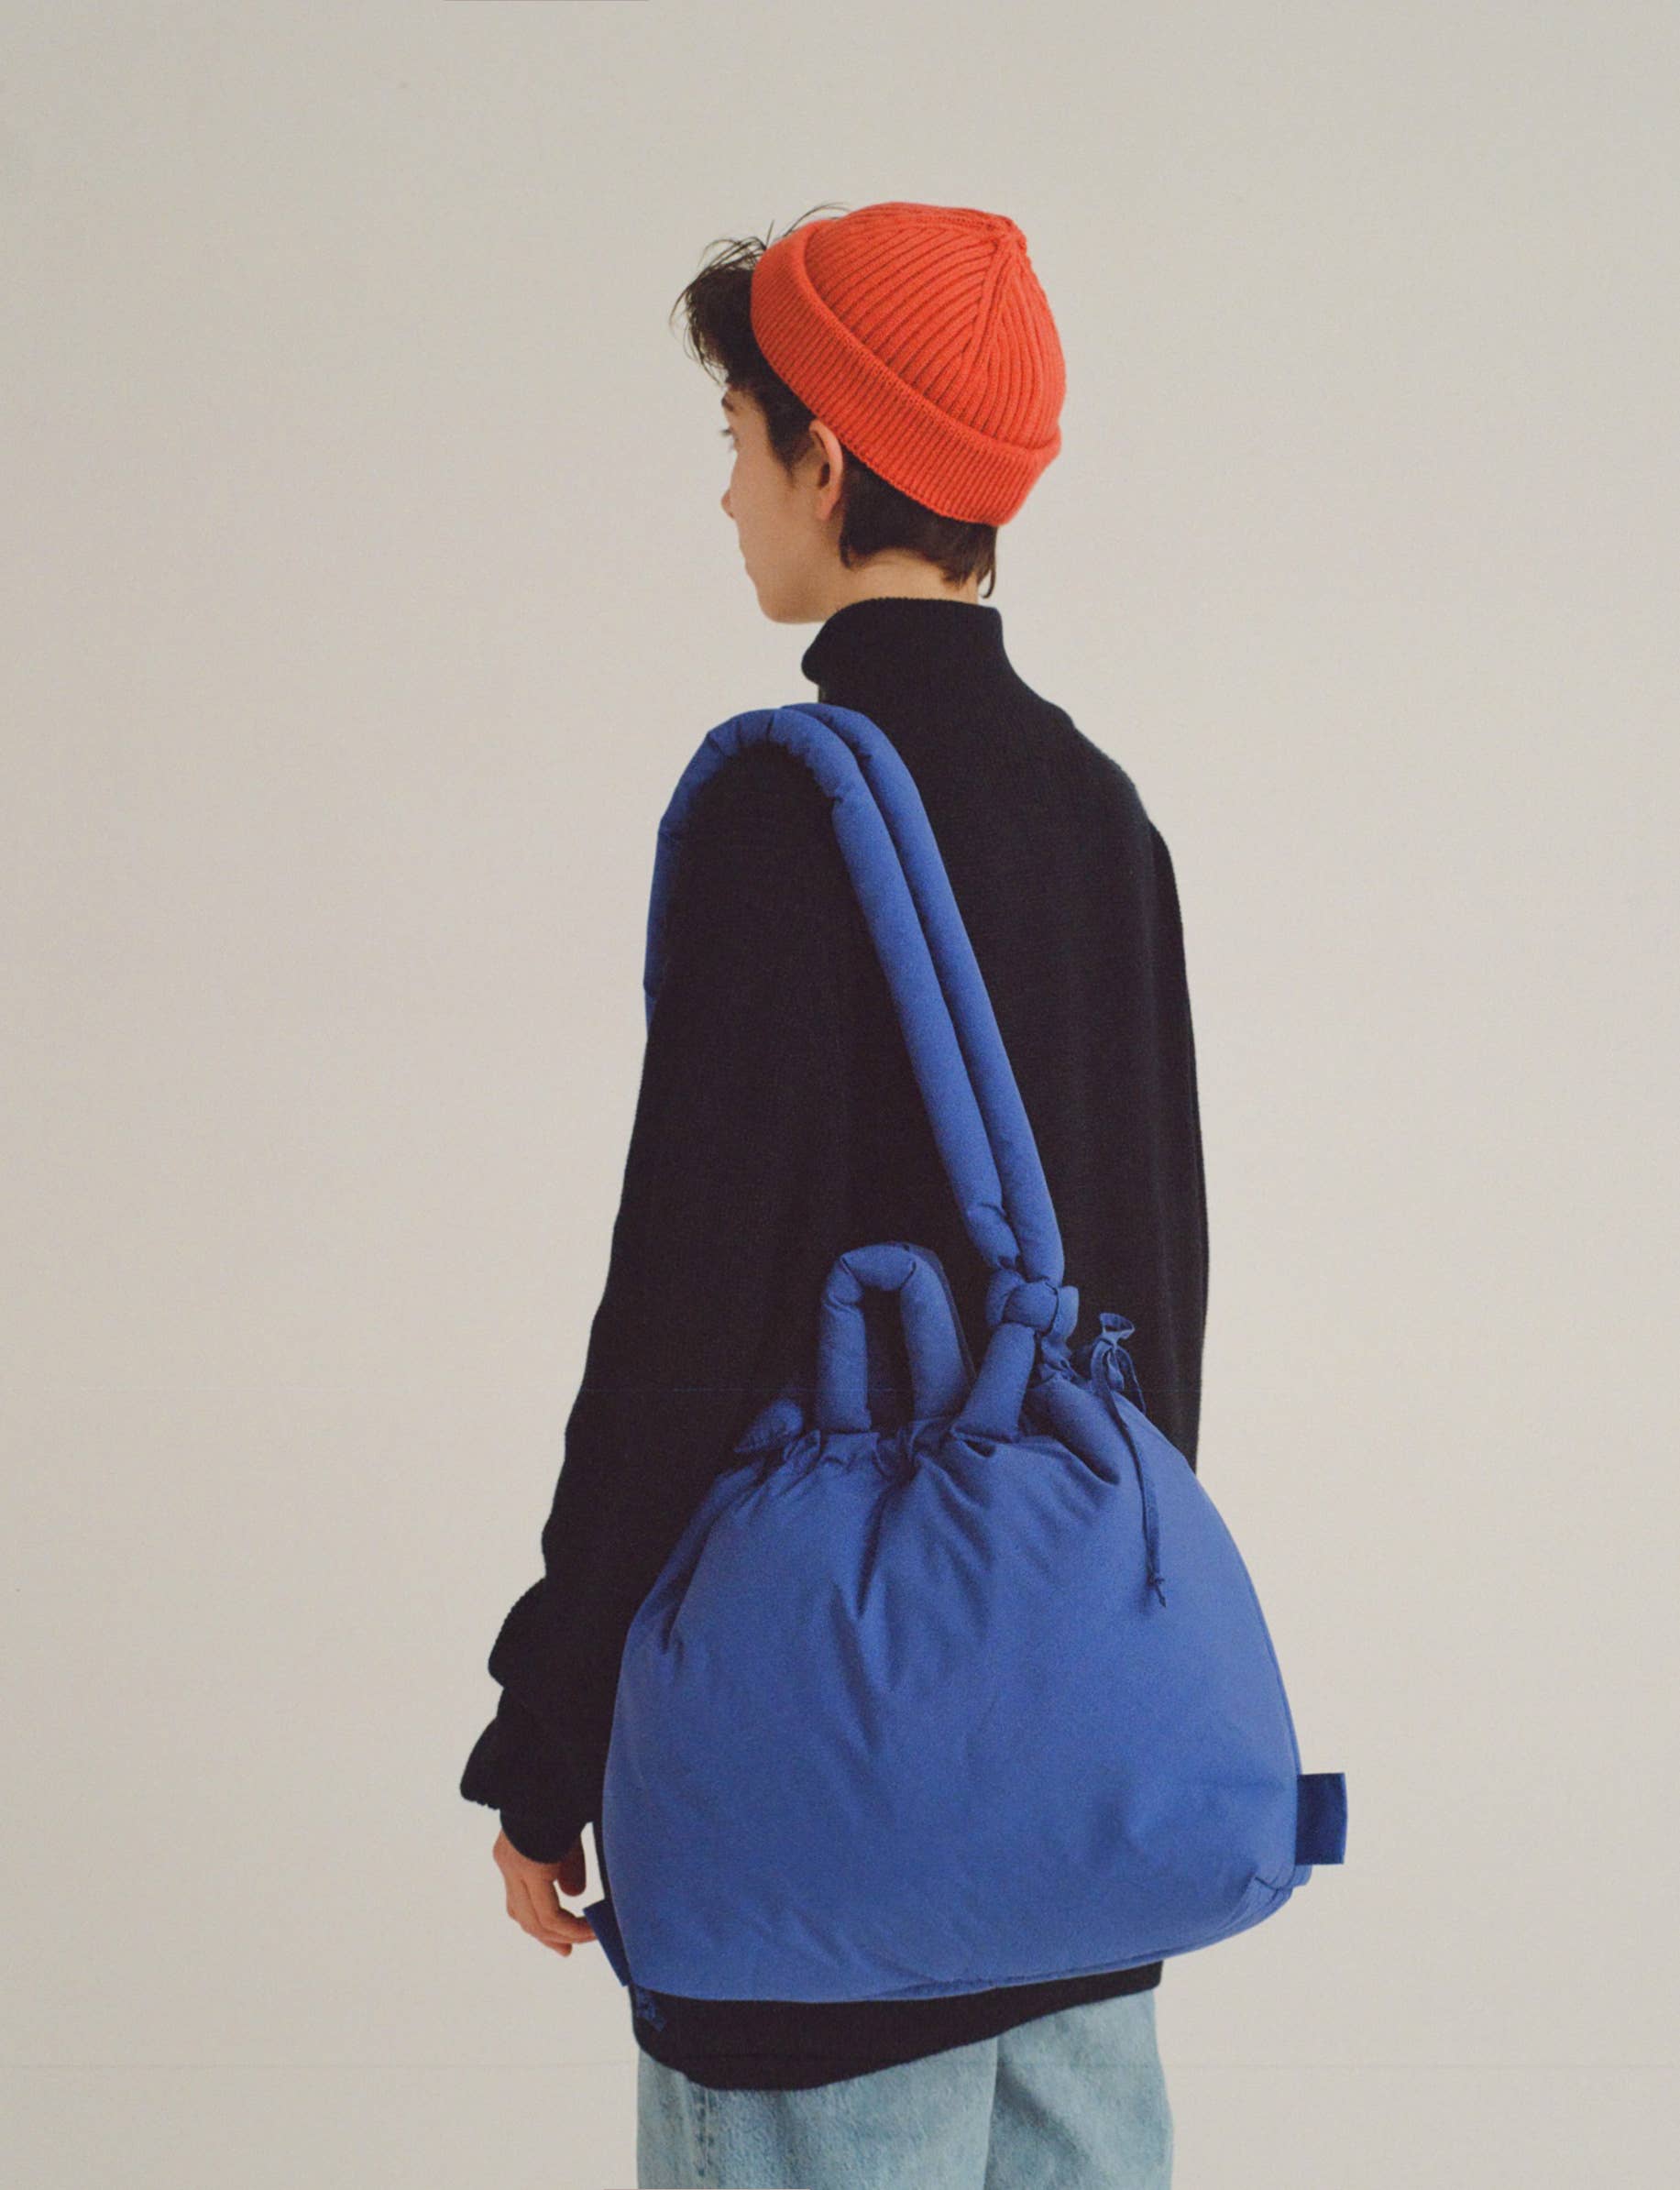 Ona Soft Bag: Light blue